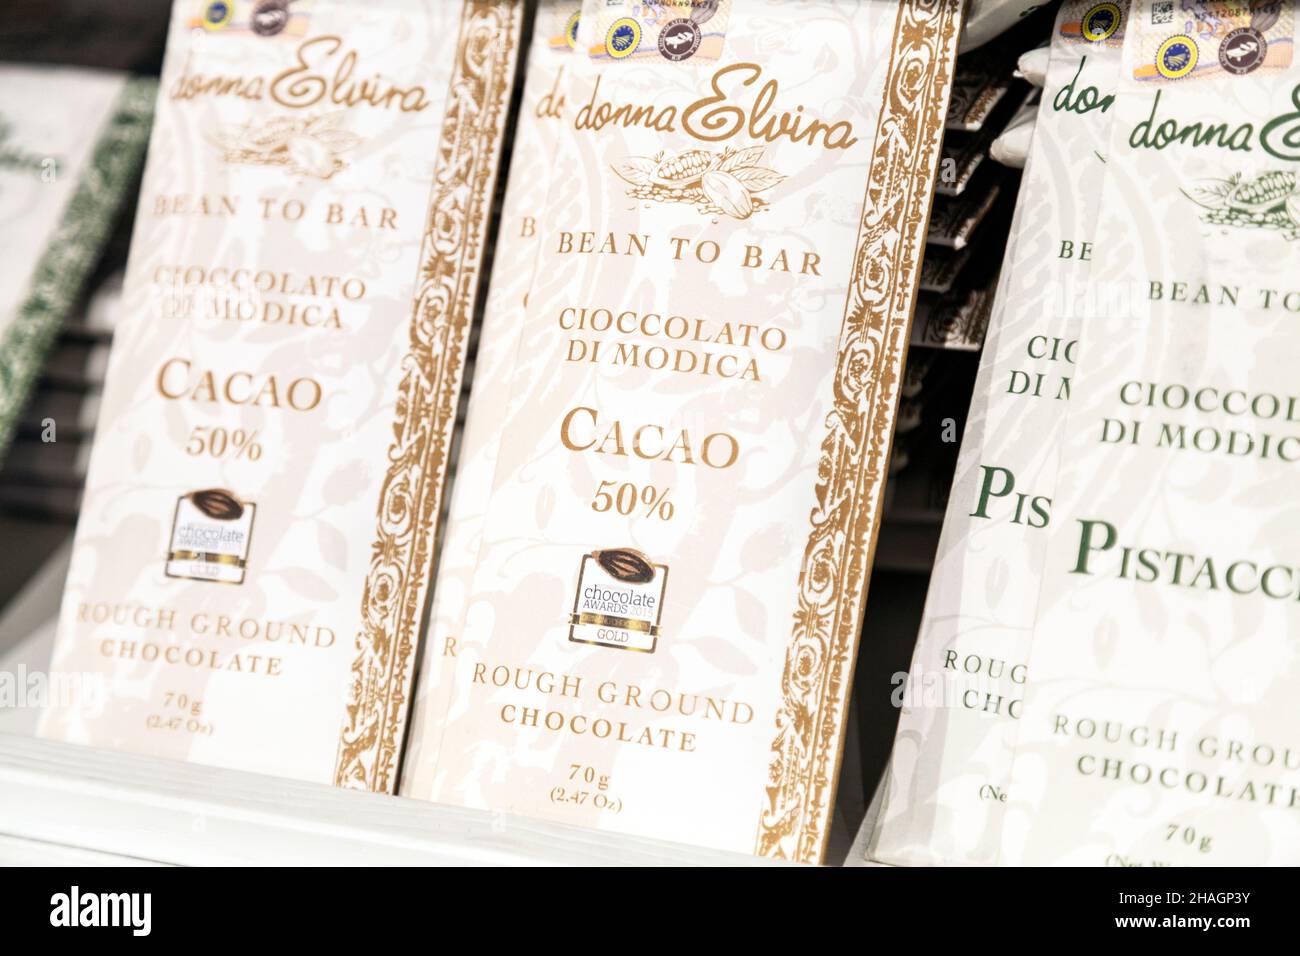 Barrette artigianali di cioccolato italiano a Eataly, Londra, Regno Unito Foto Stock